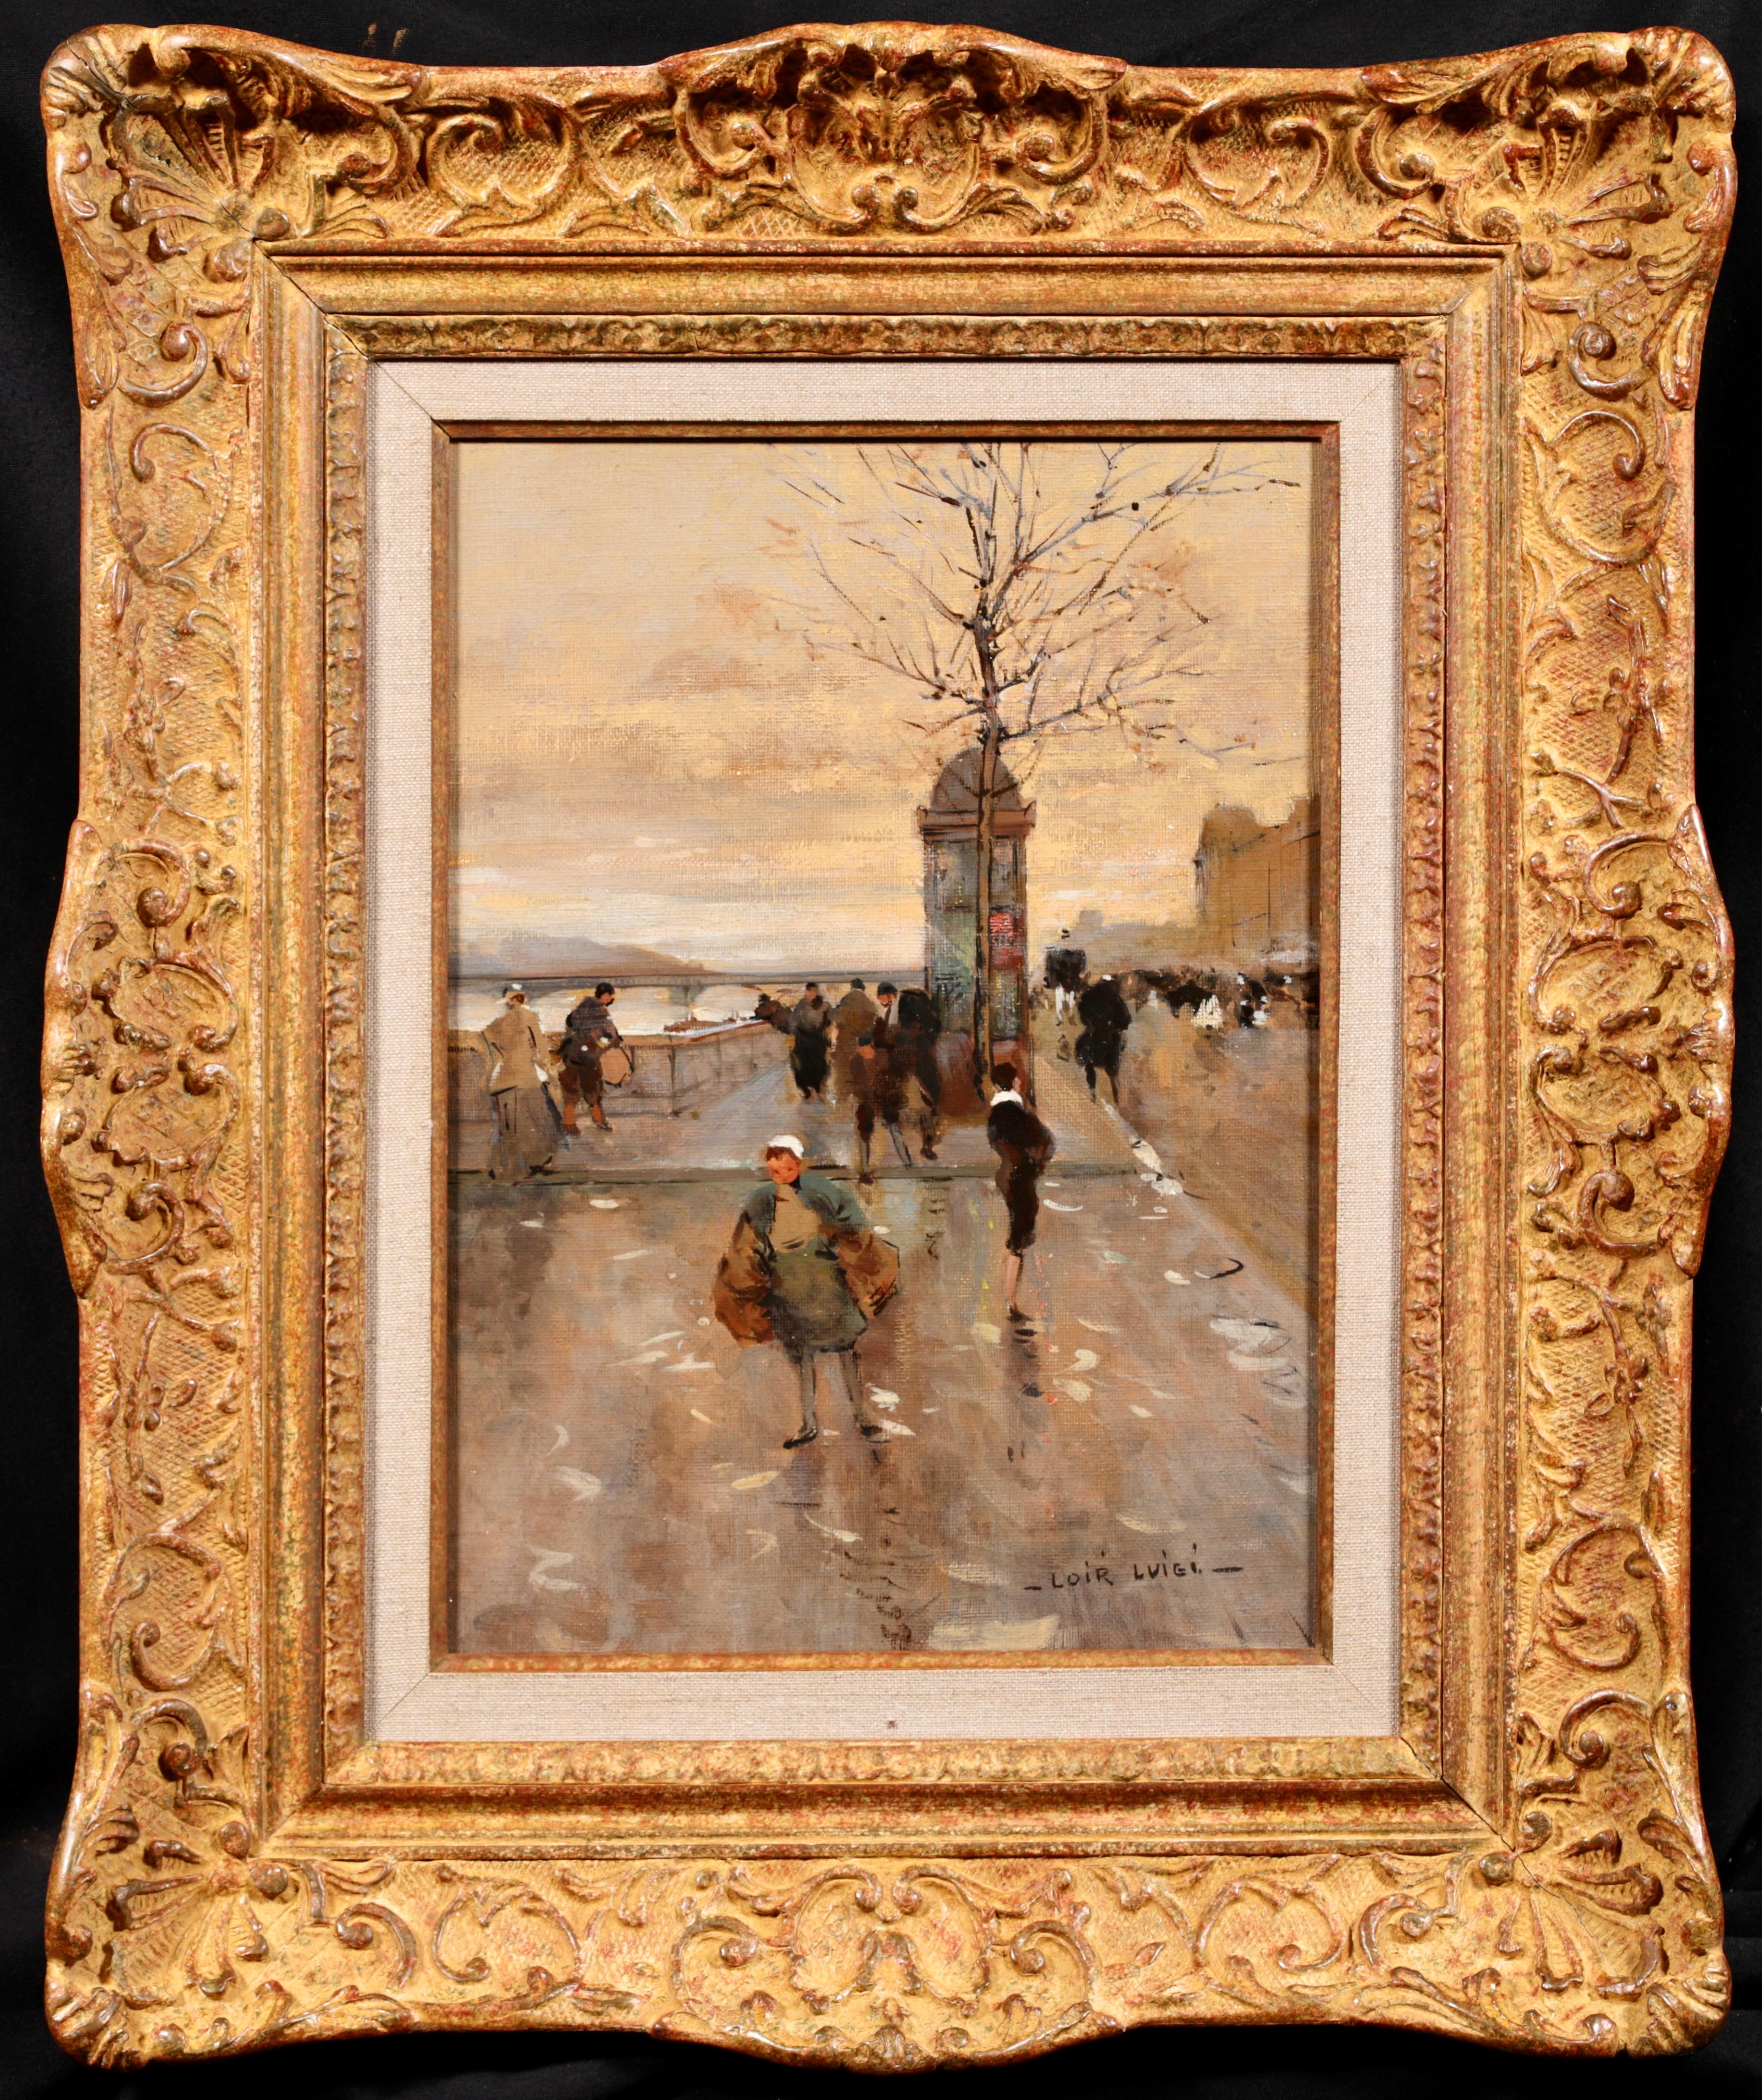 Figures dans un paysage urbain signé, huile sur toile vers 1890 du peintre impressionniste français Luigi Loir. L'œuvre représente des personnes au Quai d'Orsay, situé sur la rive gauche de la Seine à Paris, en France, lors de ce qui semble être une